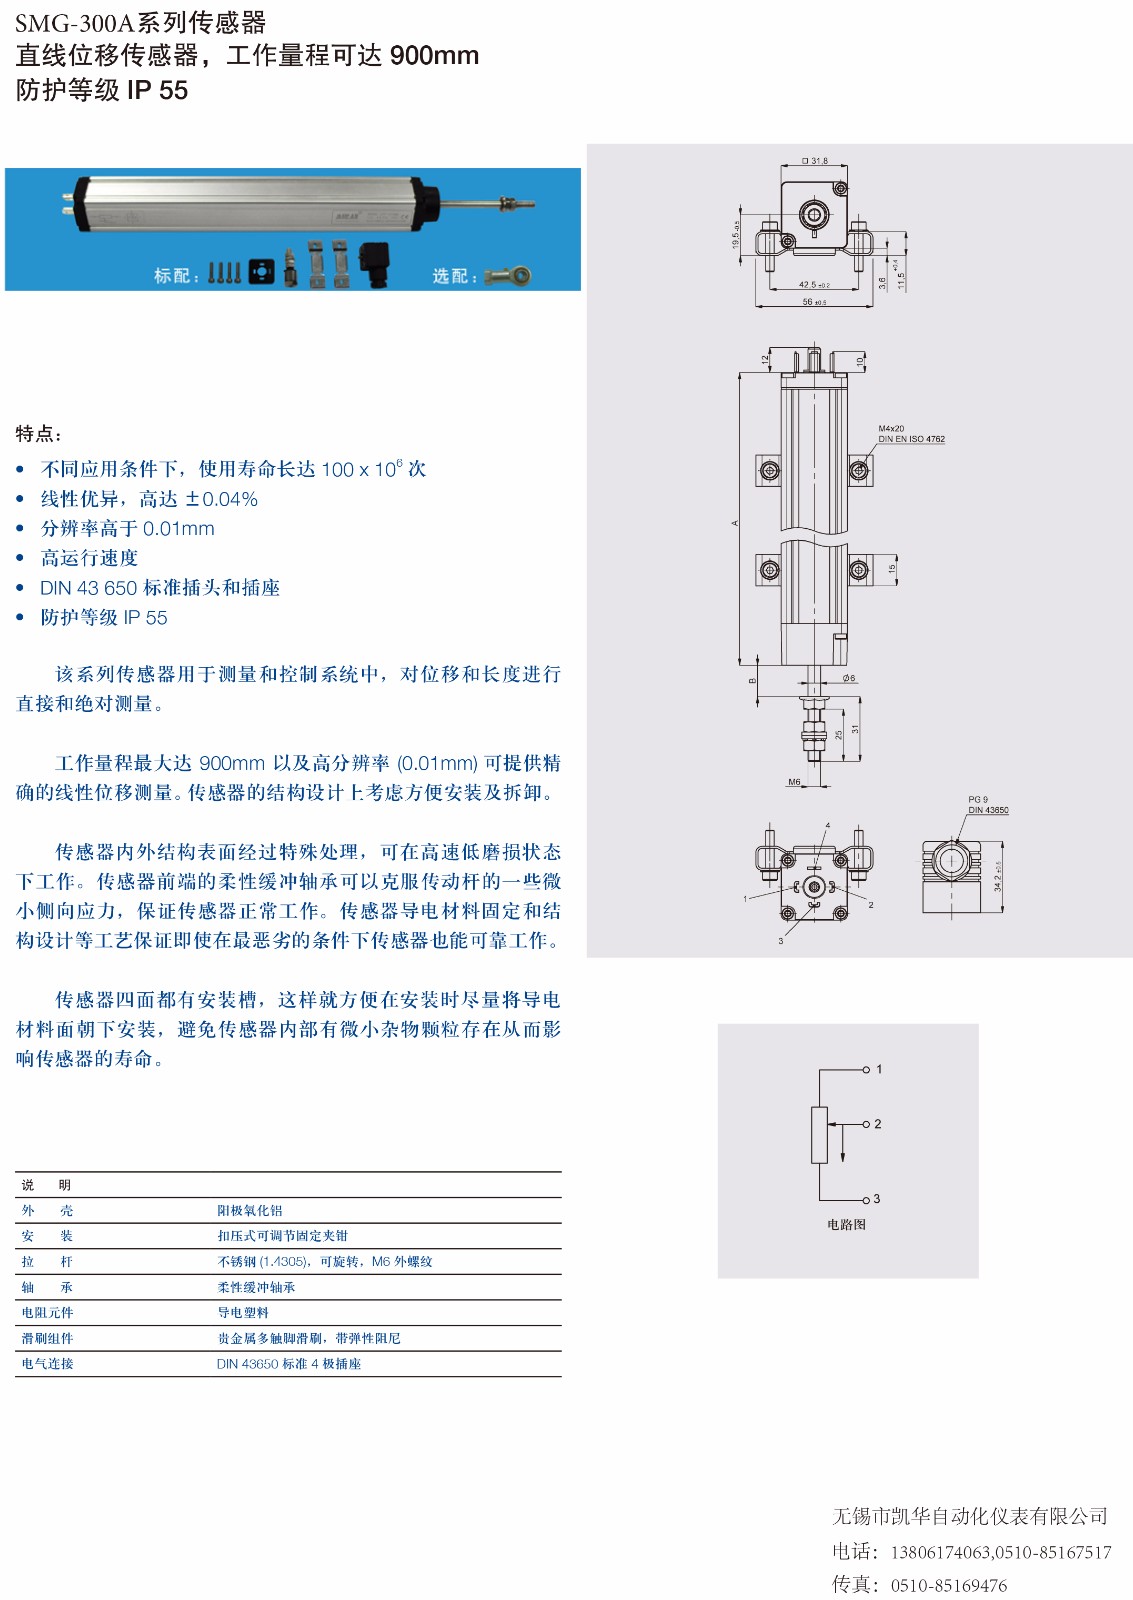 SMG-300A传感器详情资料.jpg